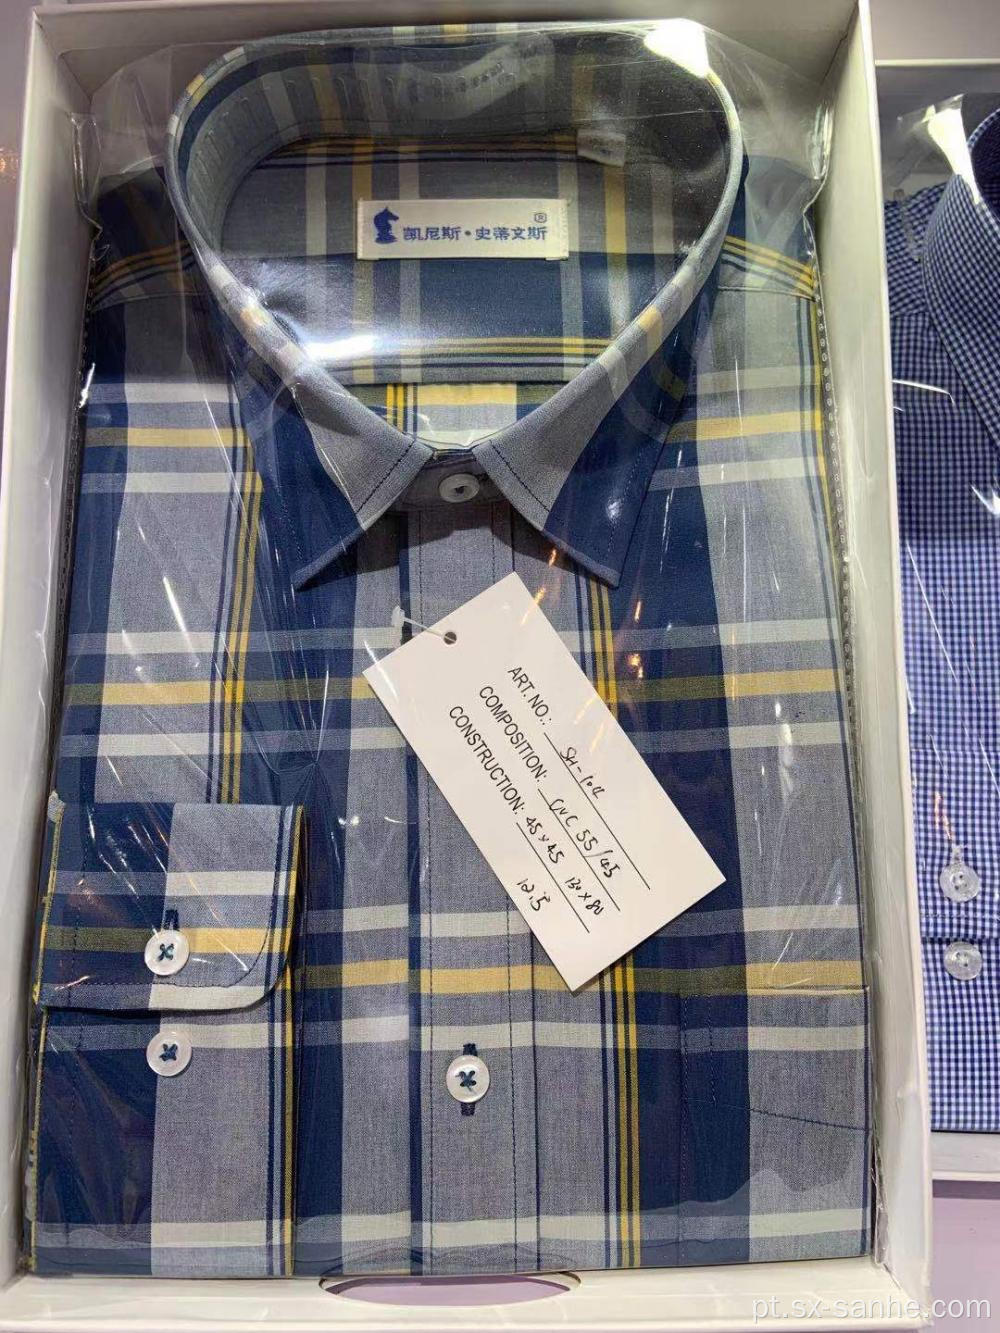 Camisa de manga comprida em tecido xadrez tingido de fio de algodão